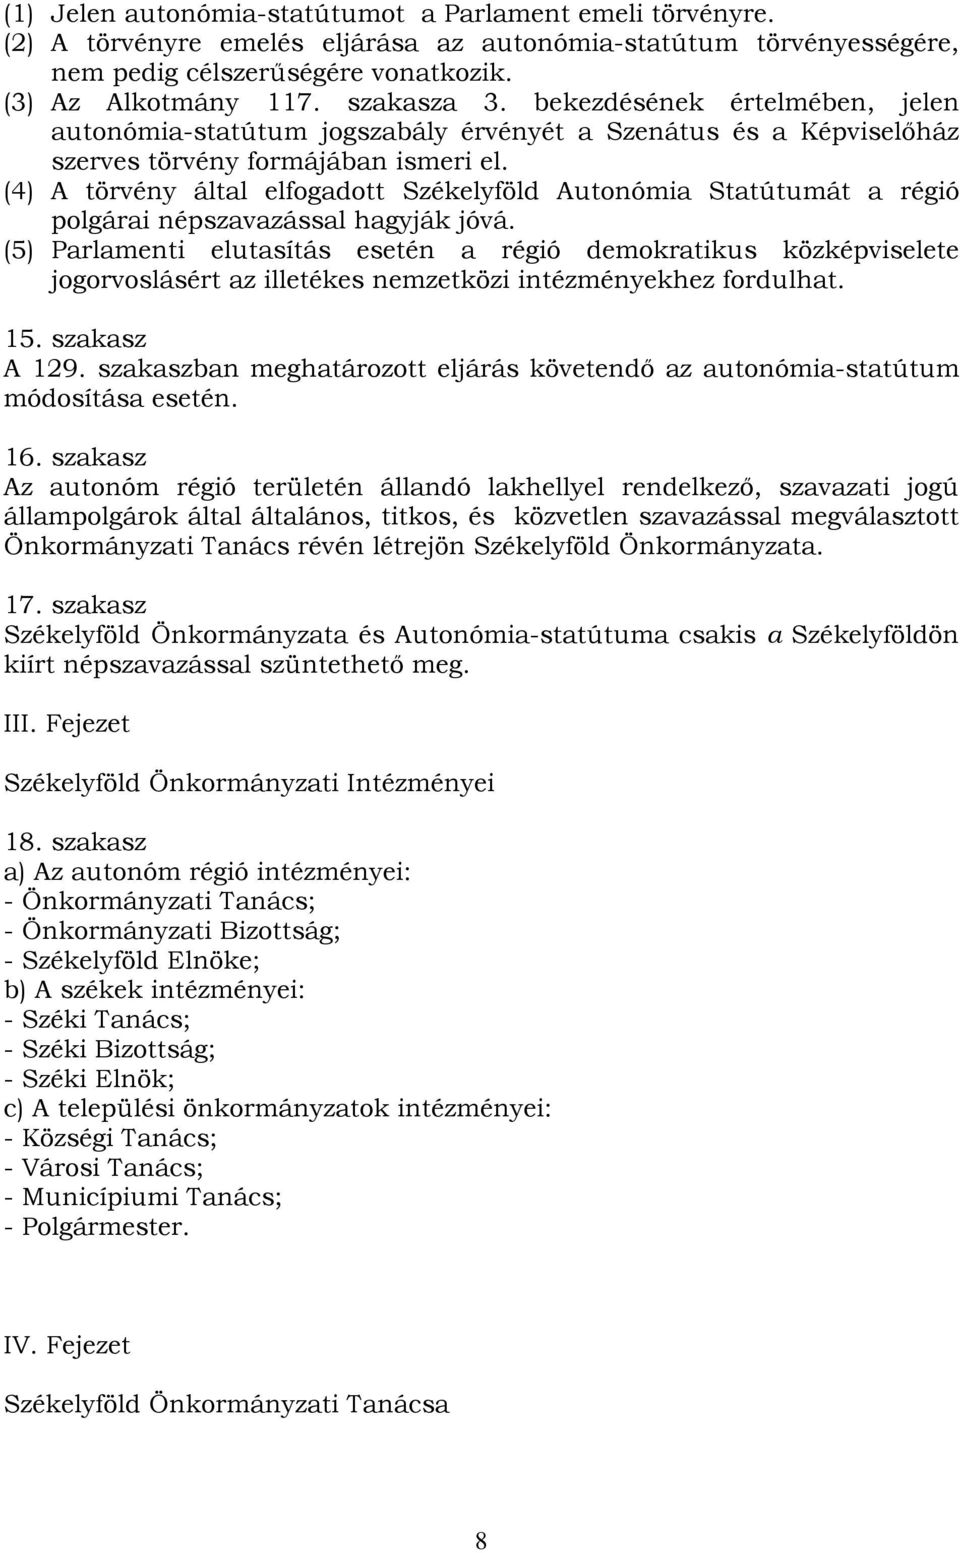 (4) A törvény által elfogadott Székelyföld Autonómia Statútumát a régió polgárai népszavazással hagyják jóvá.